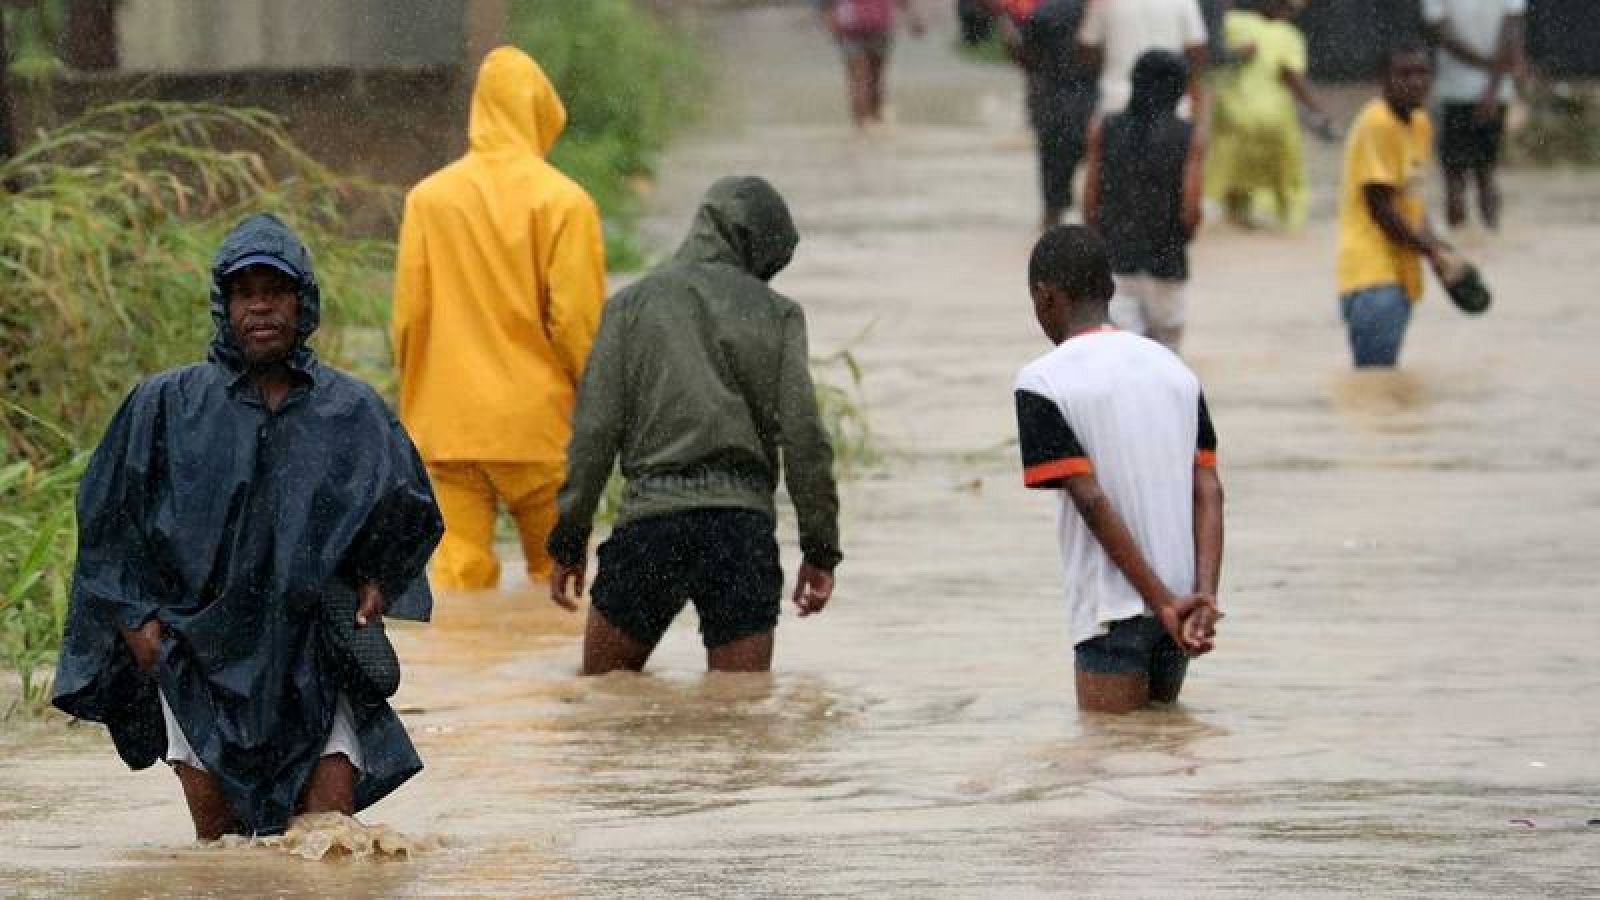  En Pemba, que hasta el domingo era de las ciudades menos afectadas por el paso del ciclón, en las últimas 24 horas cayeron fuertes lluvias y la previsión es que siga diluviando.